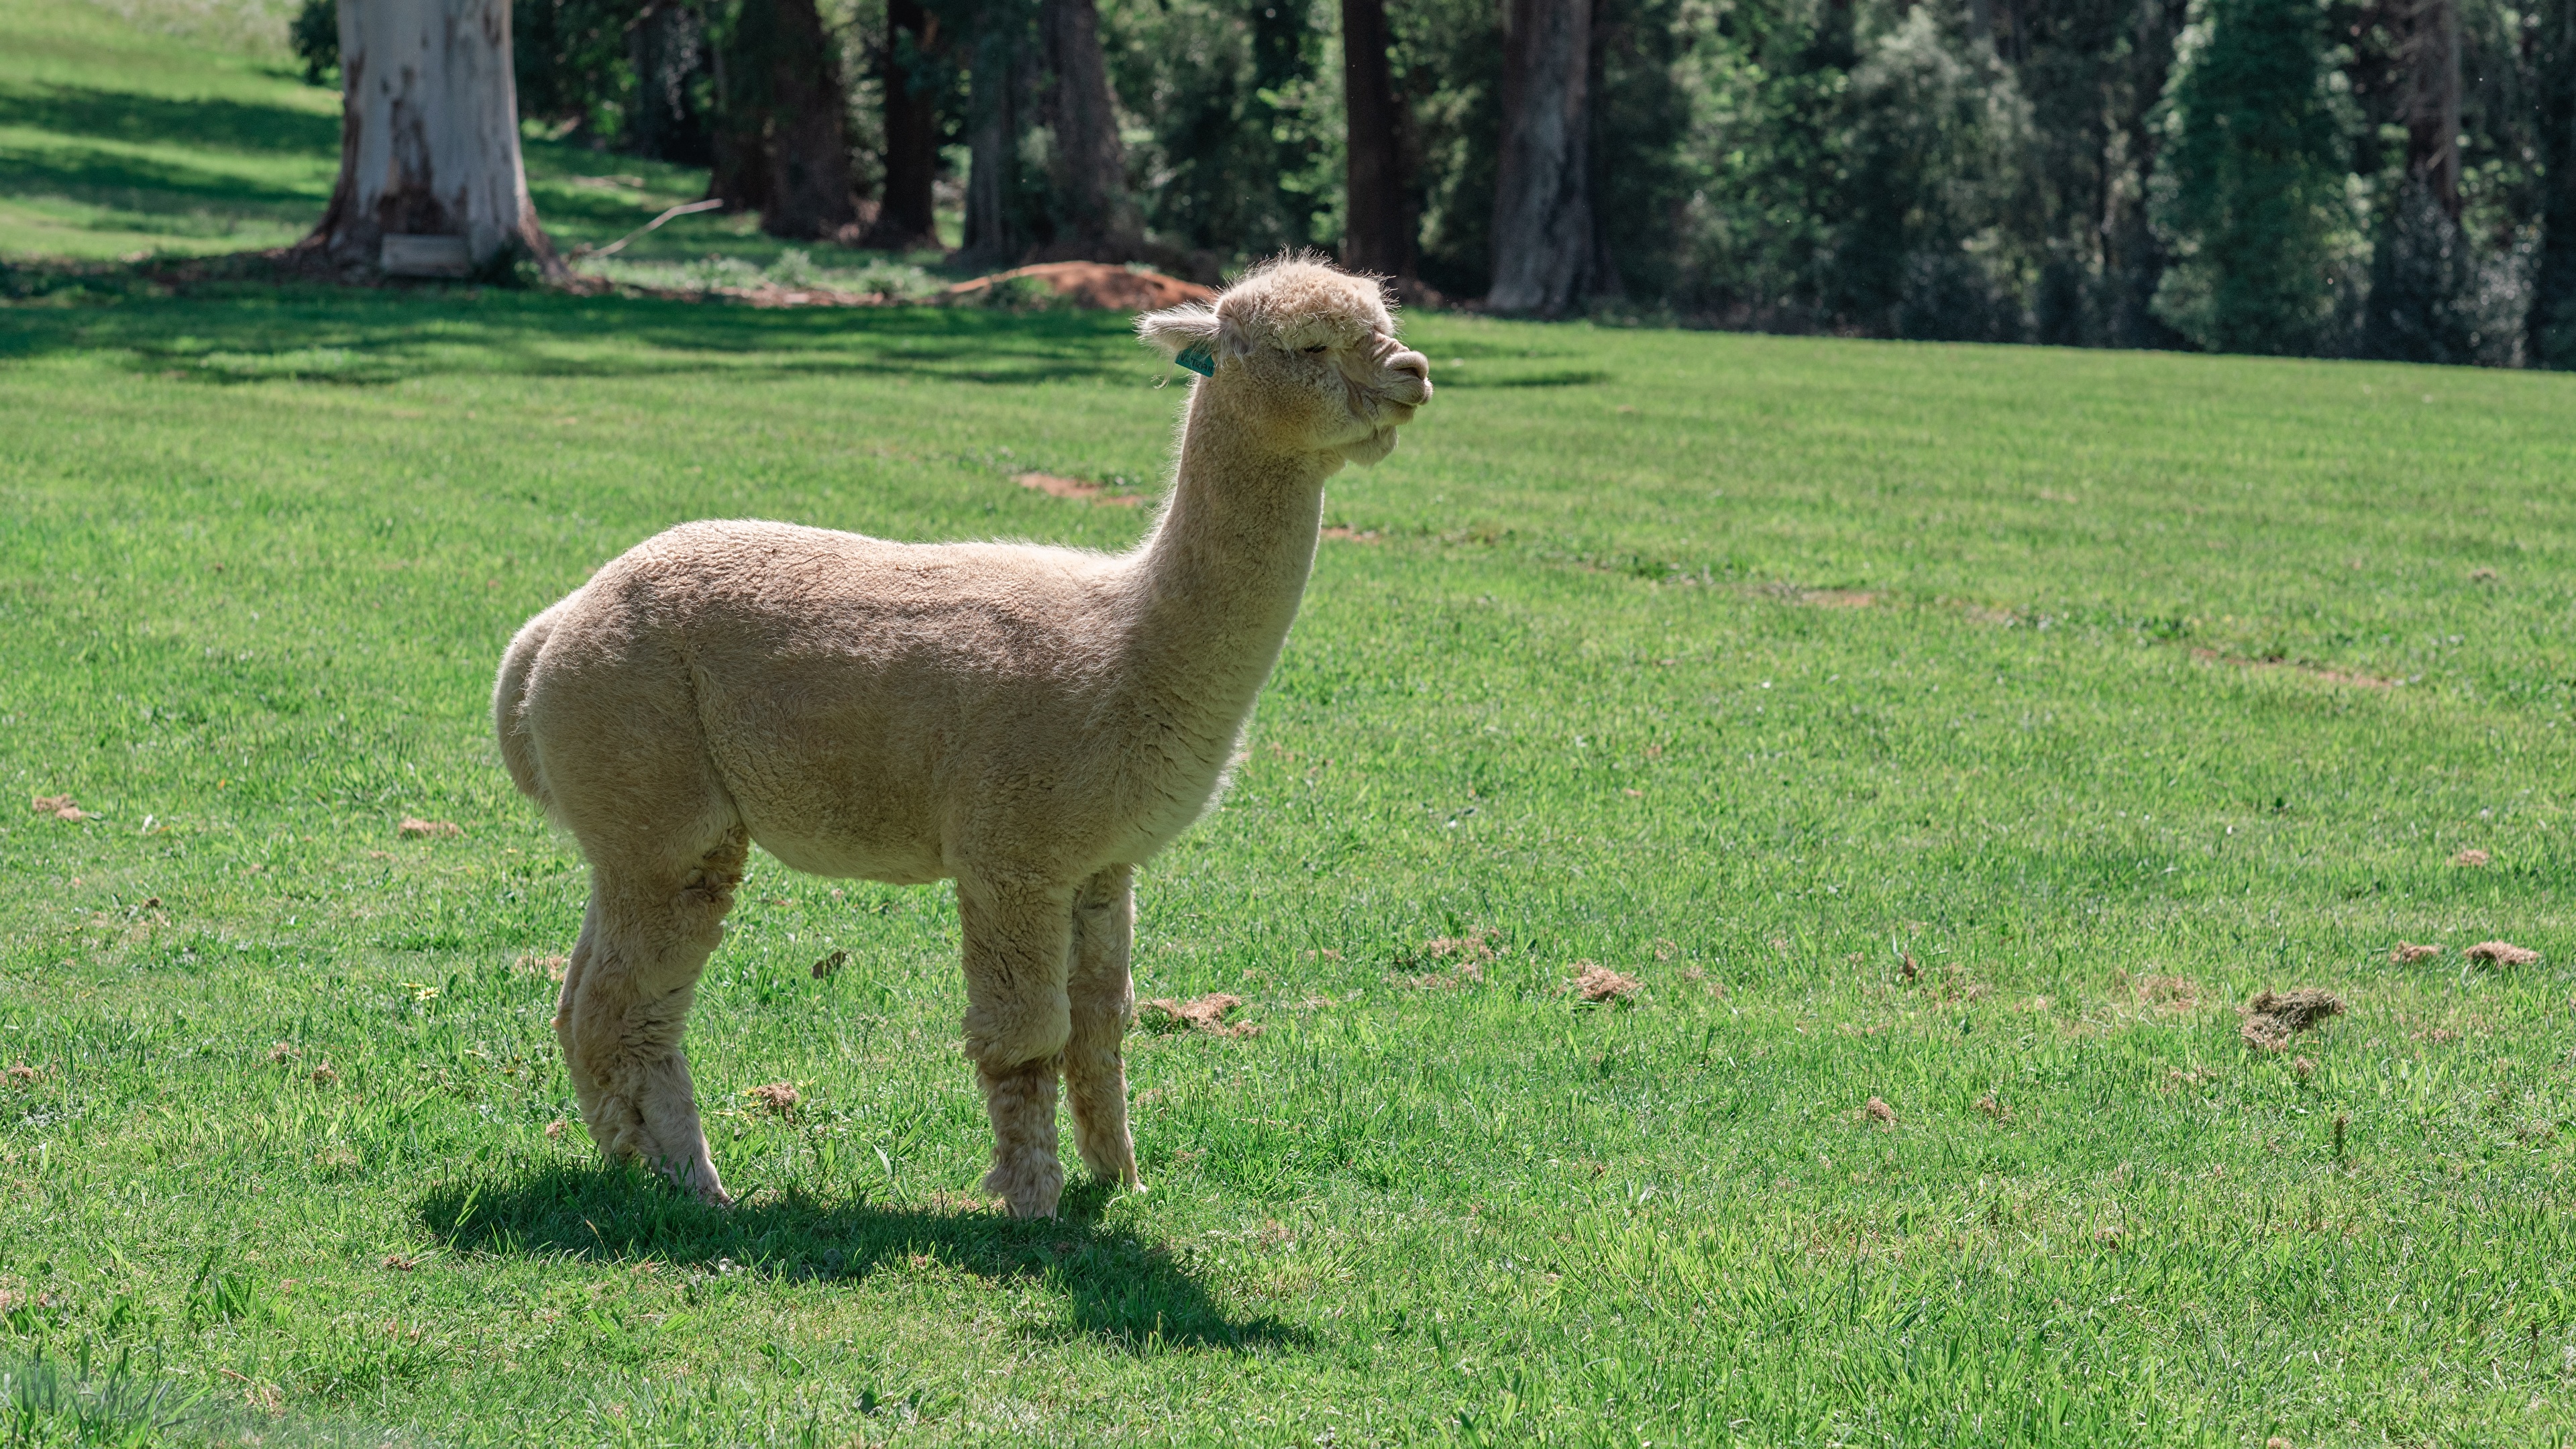 壁紙 3840x2160 偶蹄類 Alpaca 草 側面図 動物 ダウンロード 写真